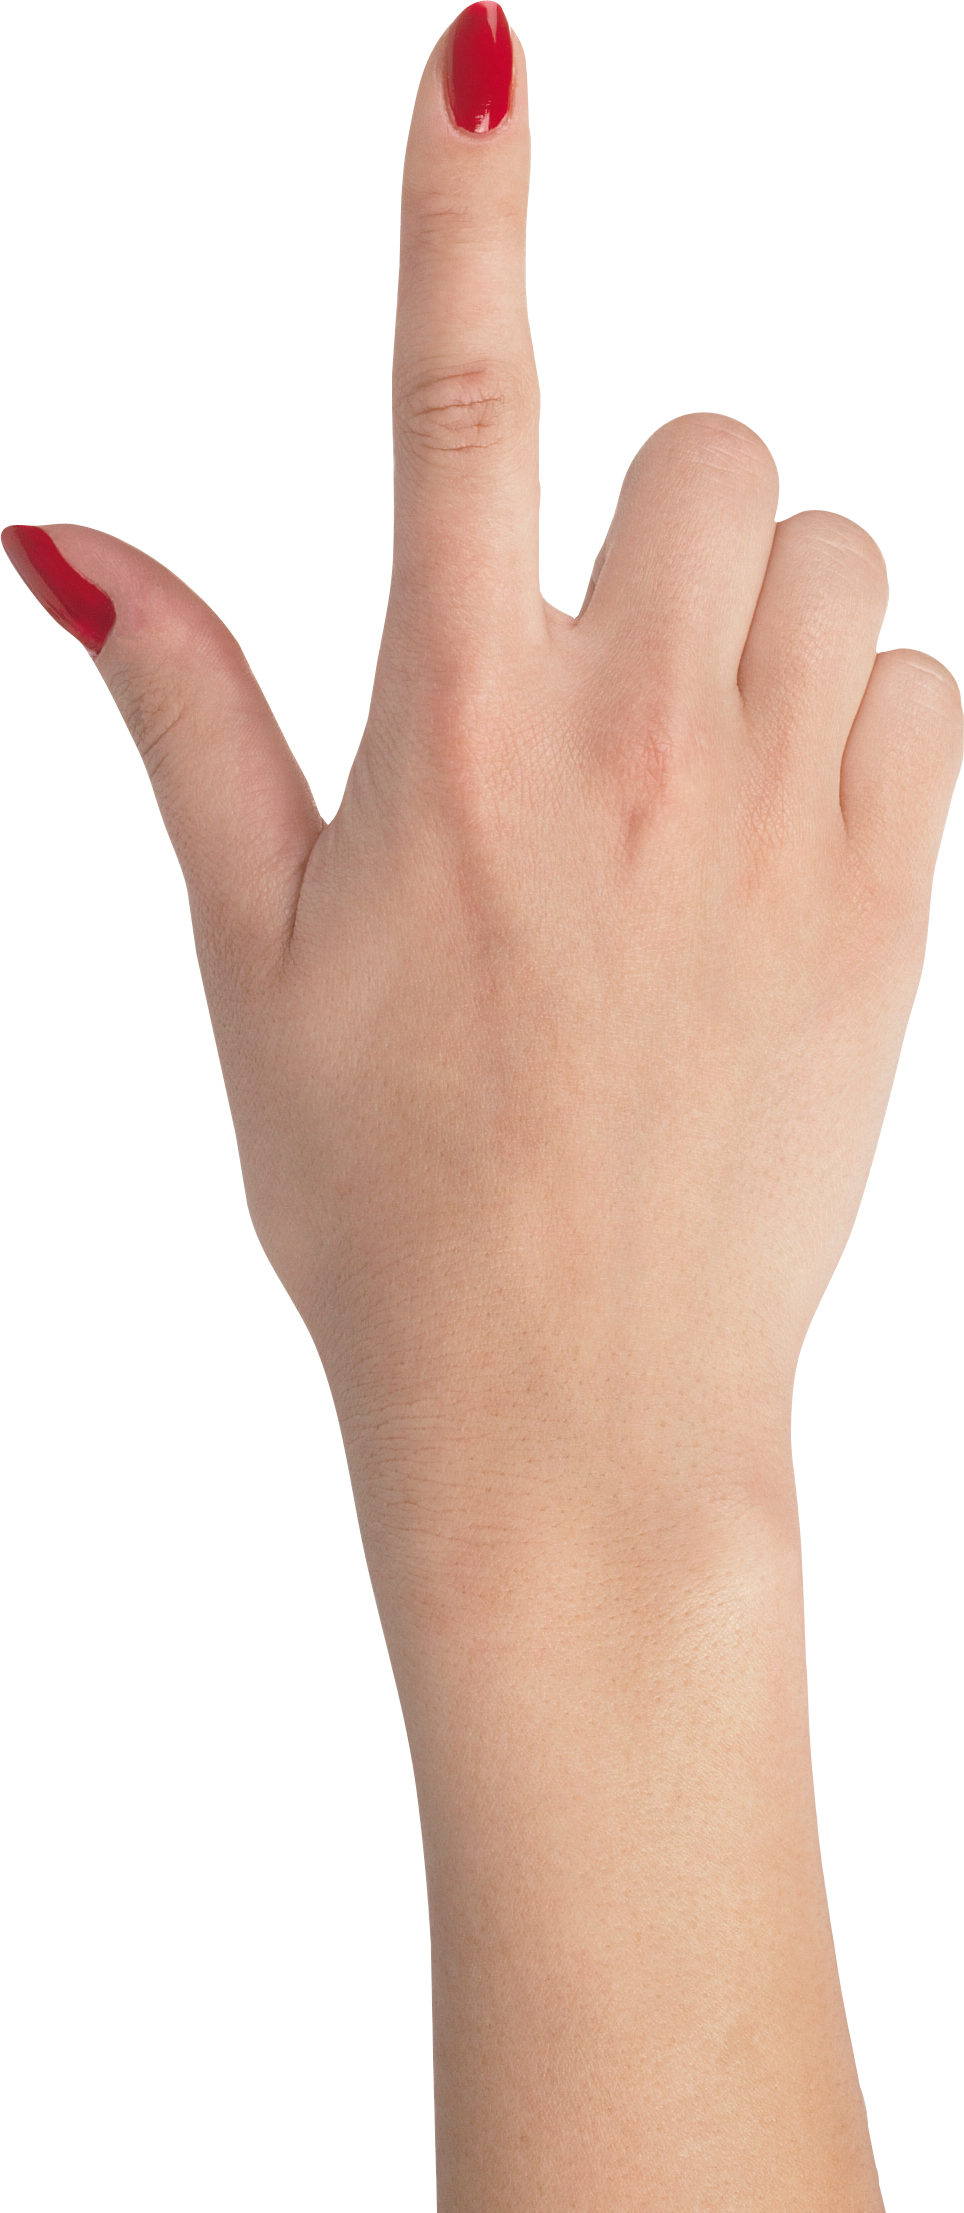 Alza un dito (unghia rossa)